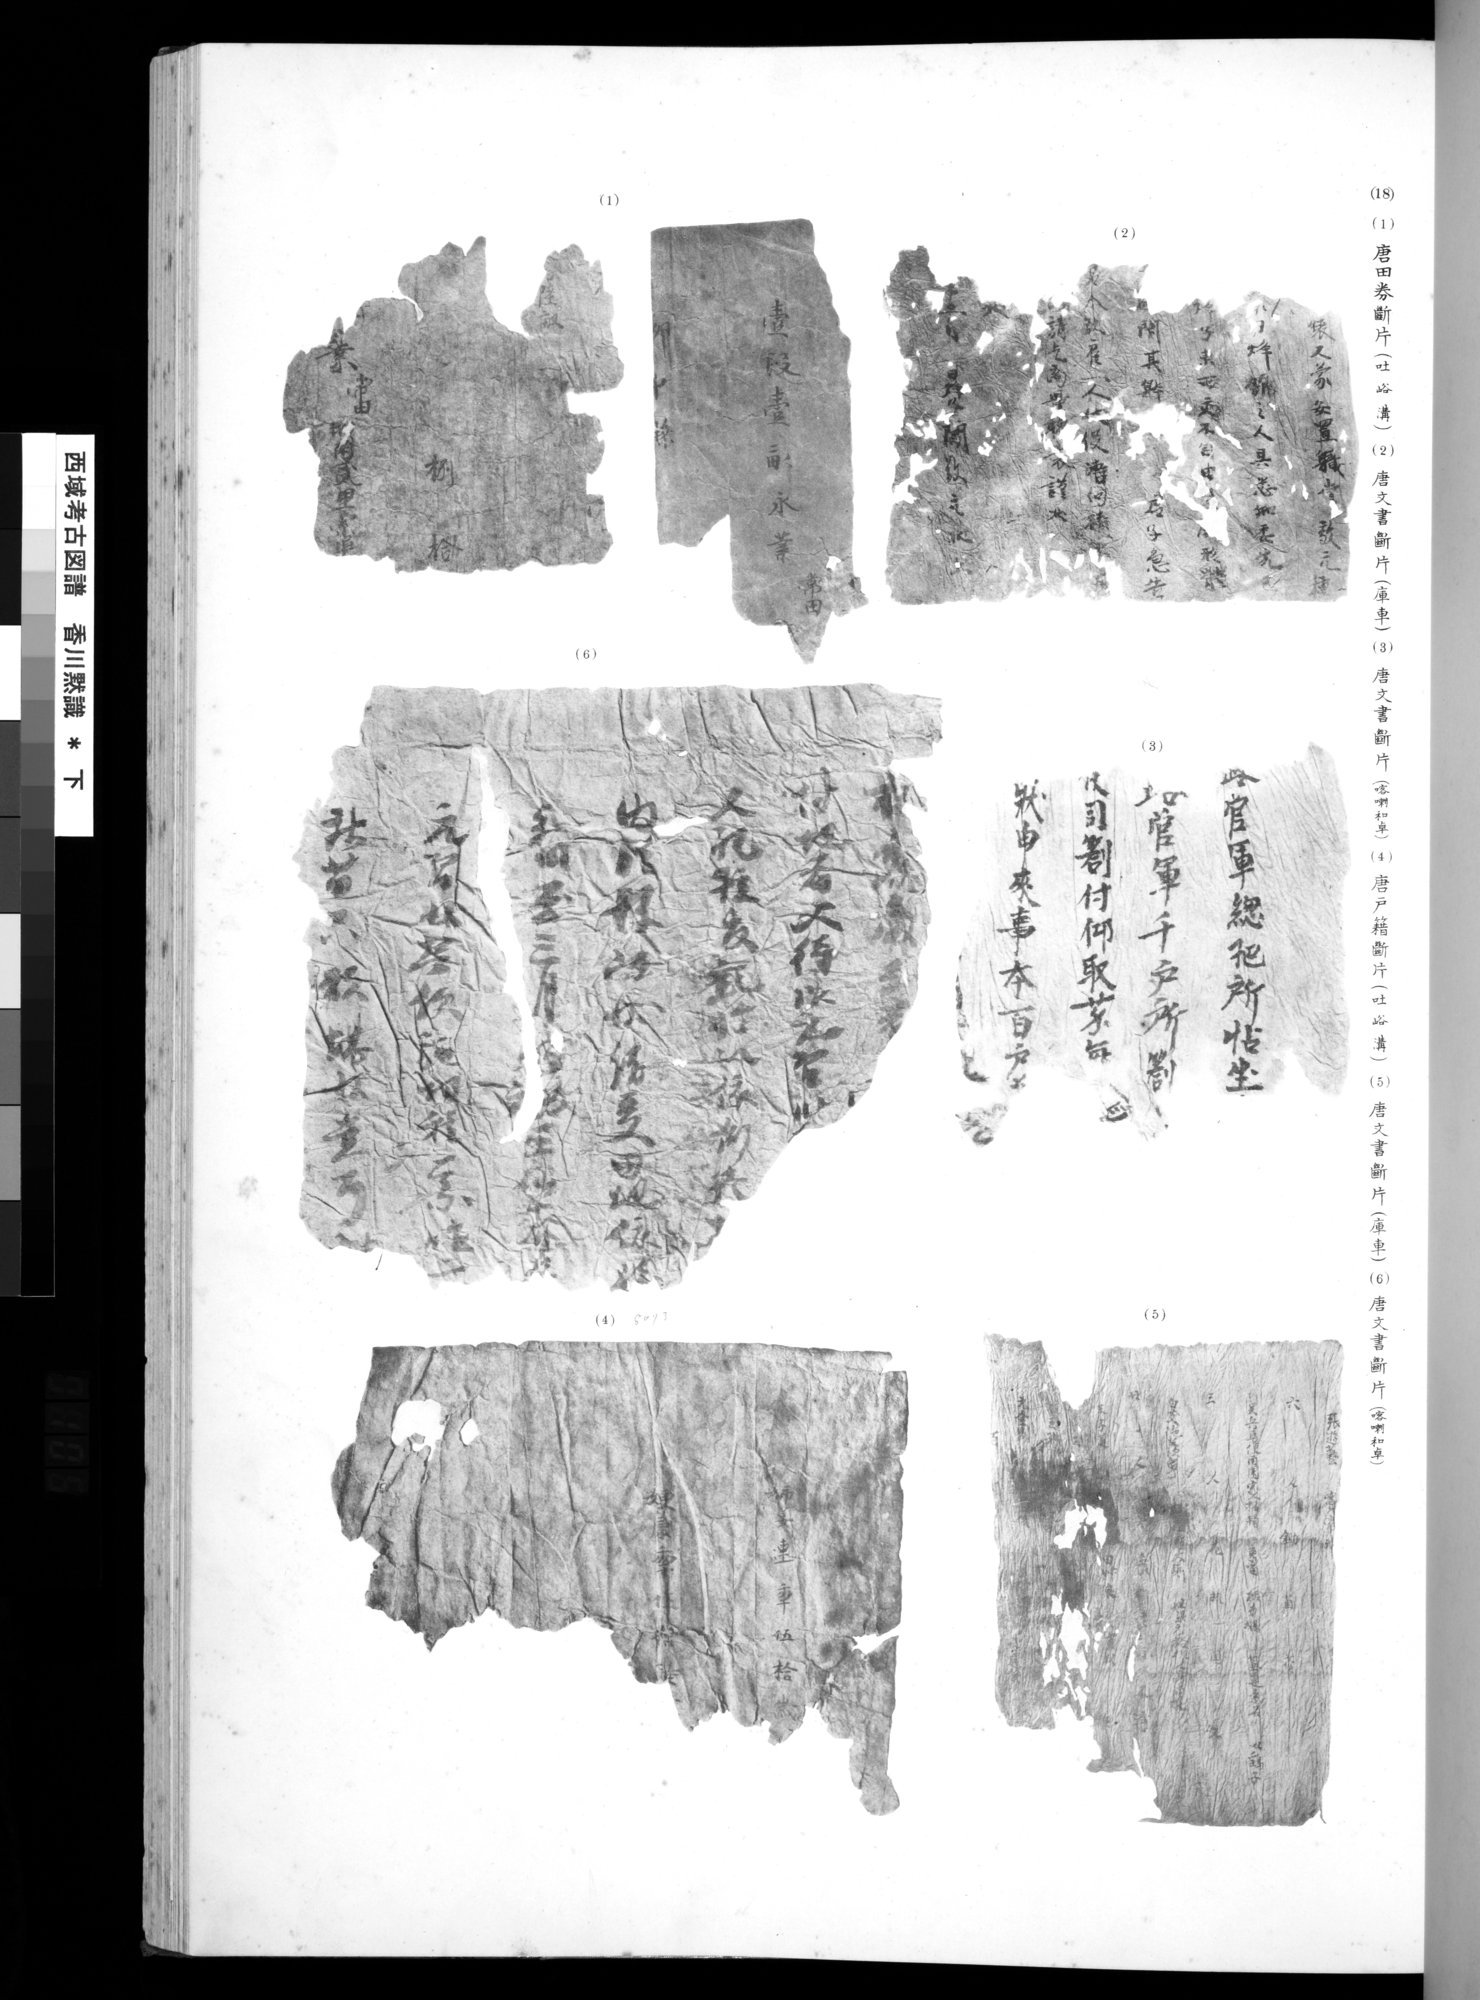 西域考古図譜 : vol.2 / 209 ページ（白黒高解像度画像）